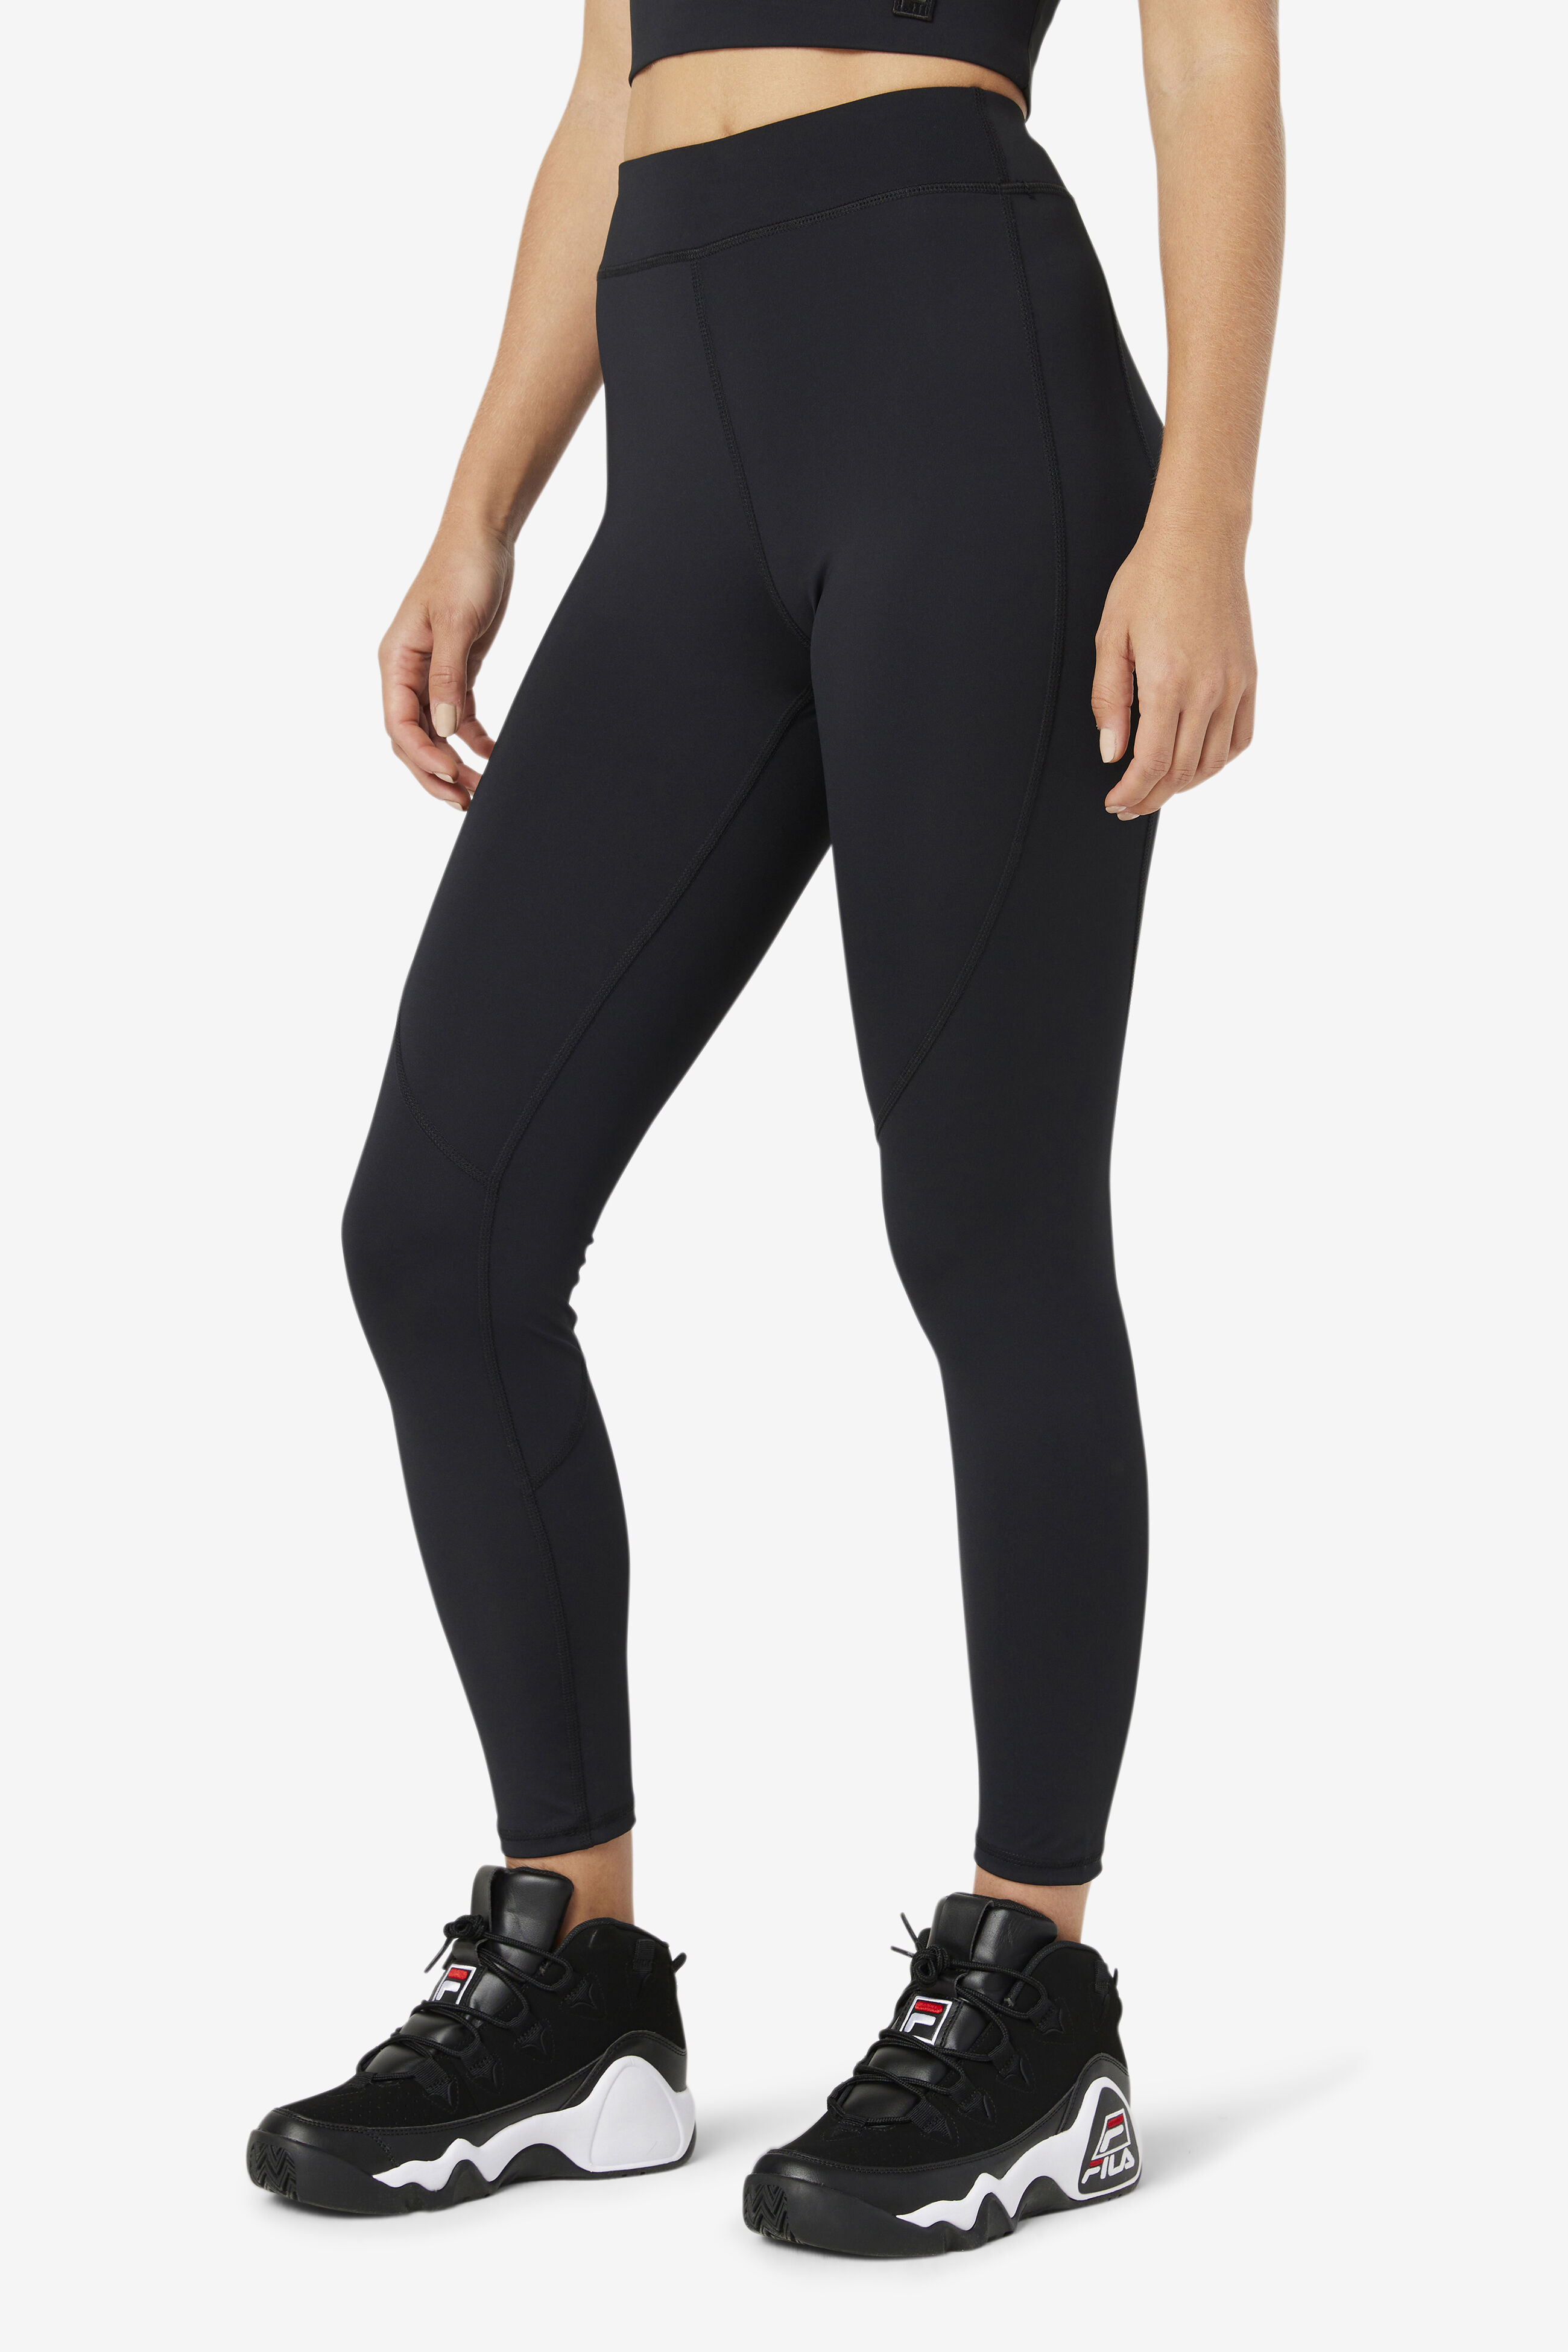 New FILA SPORT Women's Workout Gym Fitness High Waist Capri Leggings Black  Large | eBay